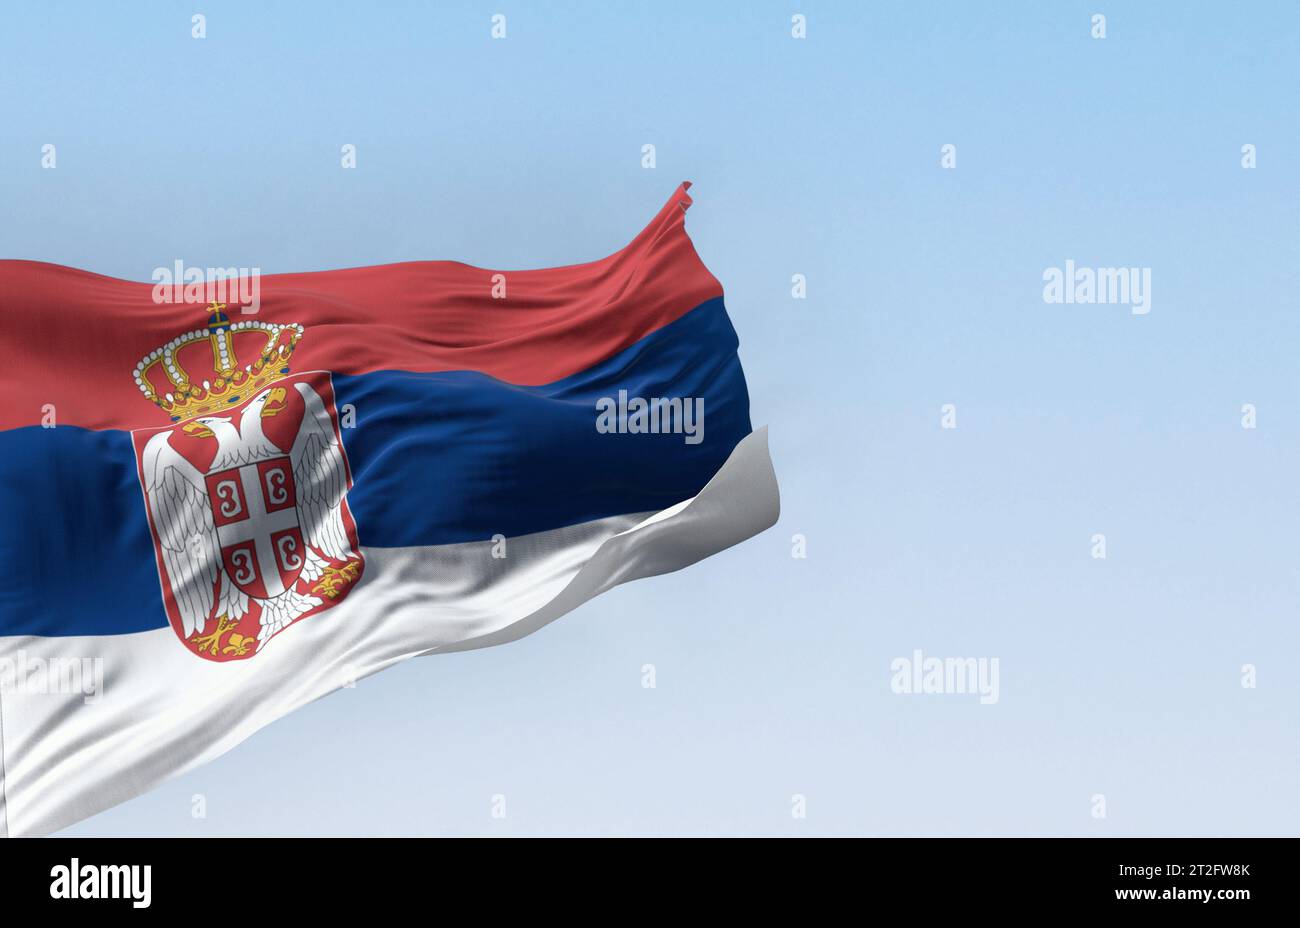 Die serbische Nationalflagge weht an einem klaren Tag im Wind. Rote, blaue und weiße Bänder, mit serbischem Wappen links von der Mitte. 3D-Illustration Stockfoto